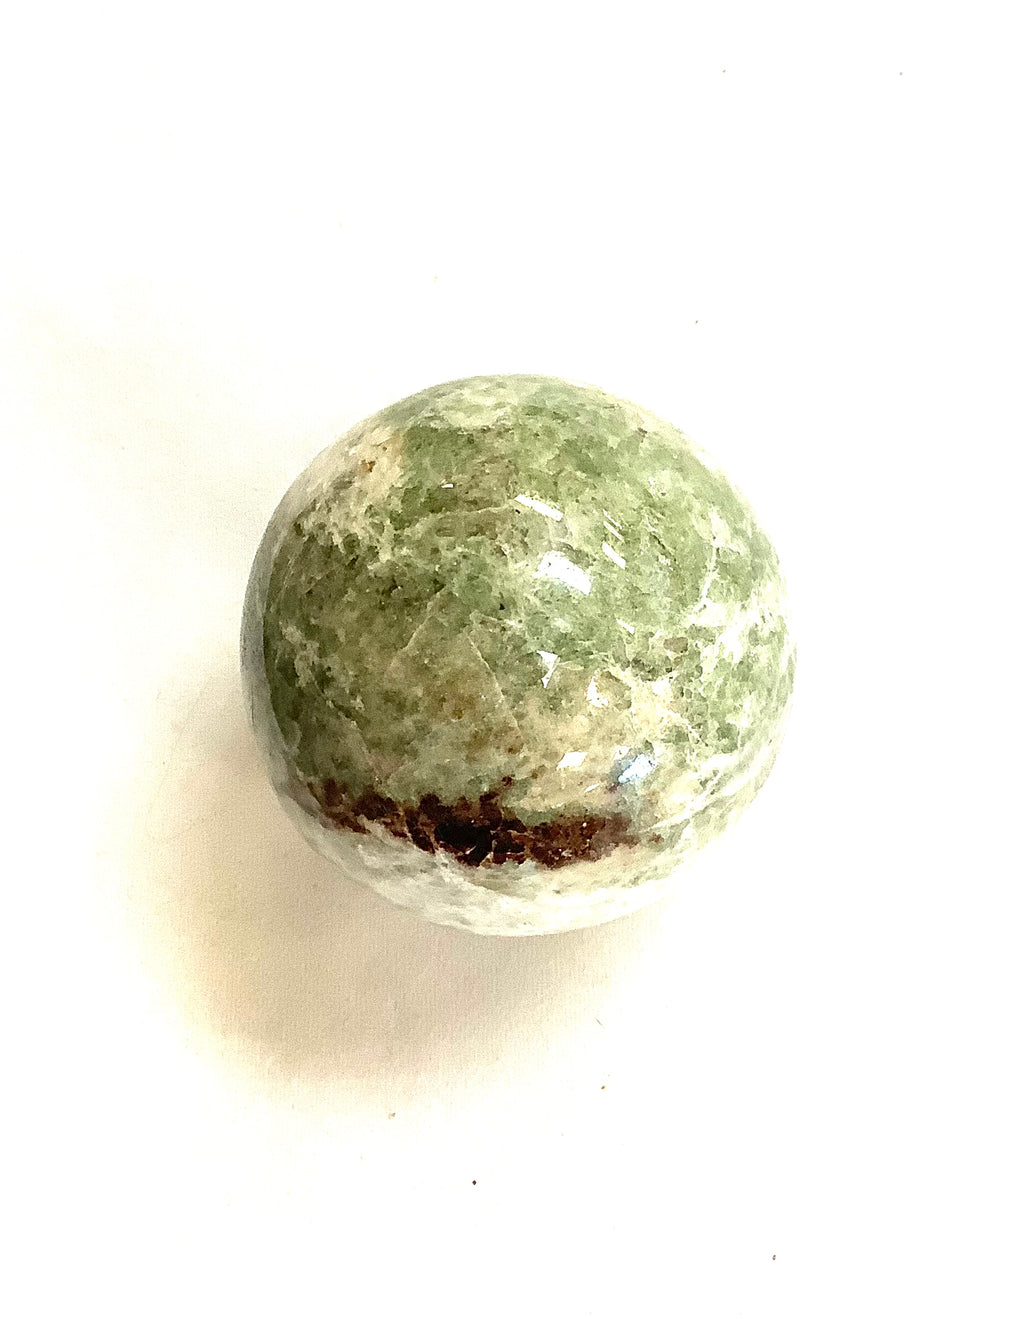 Vesuvianite & Garnet Sphere 2” - Lighten Up Shop